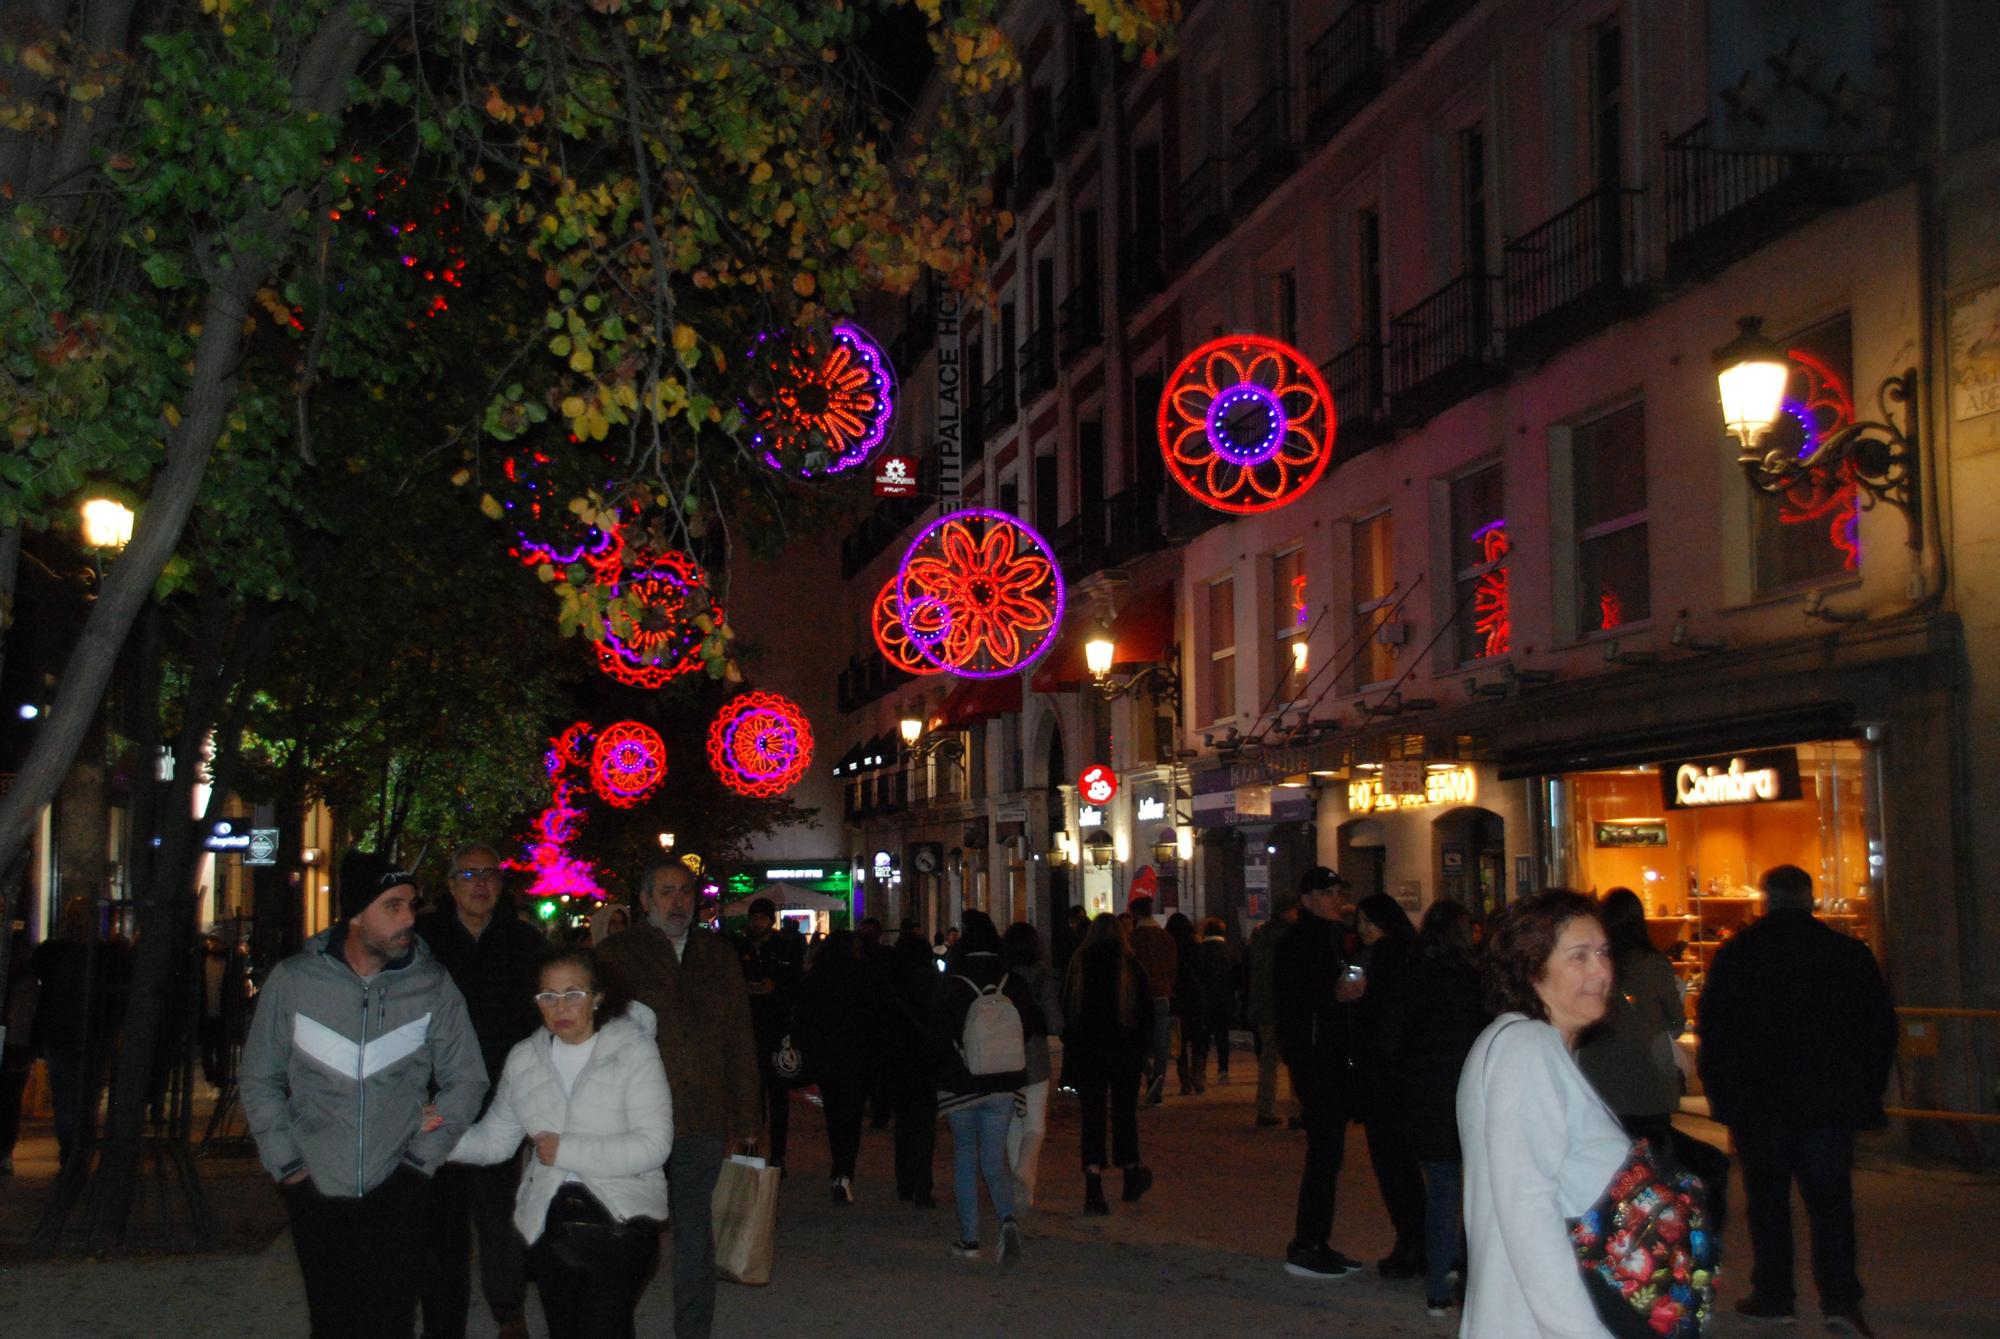 En imágenes: así son las luces de Navidad en Madrid